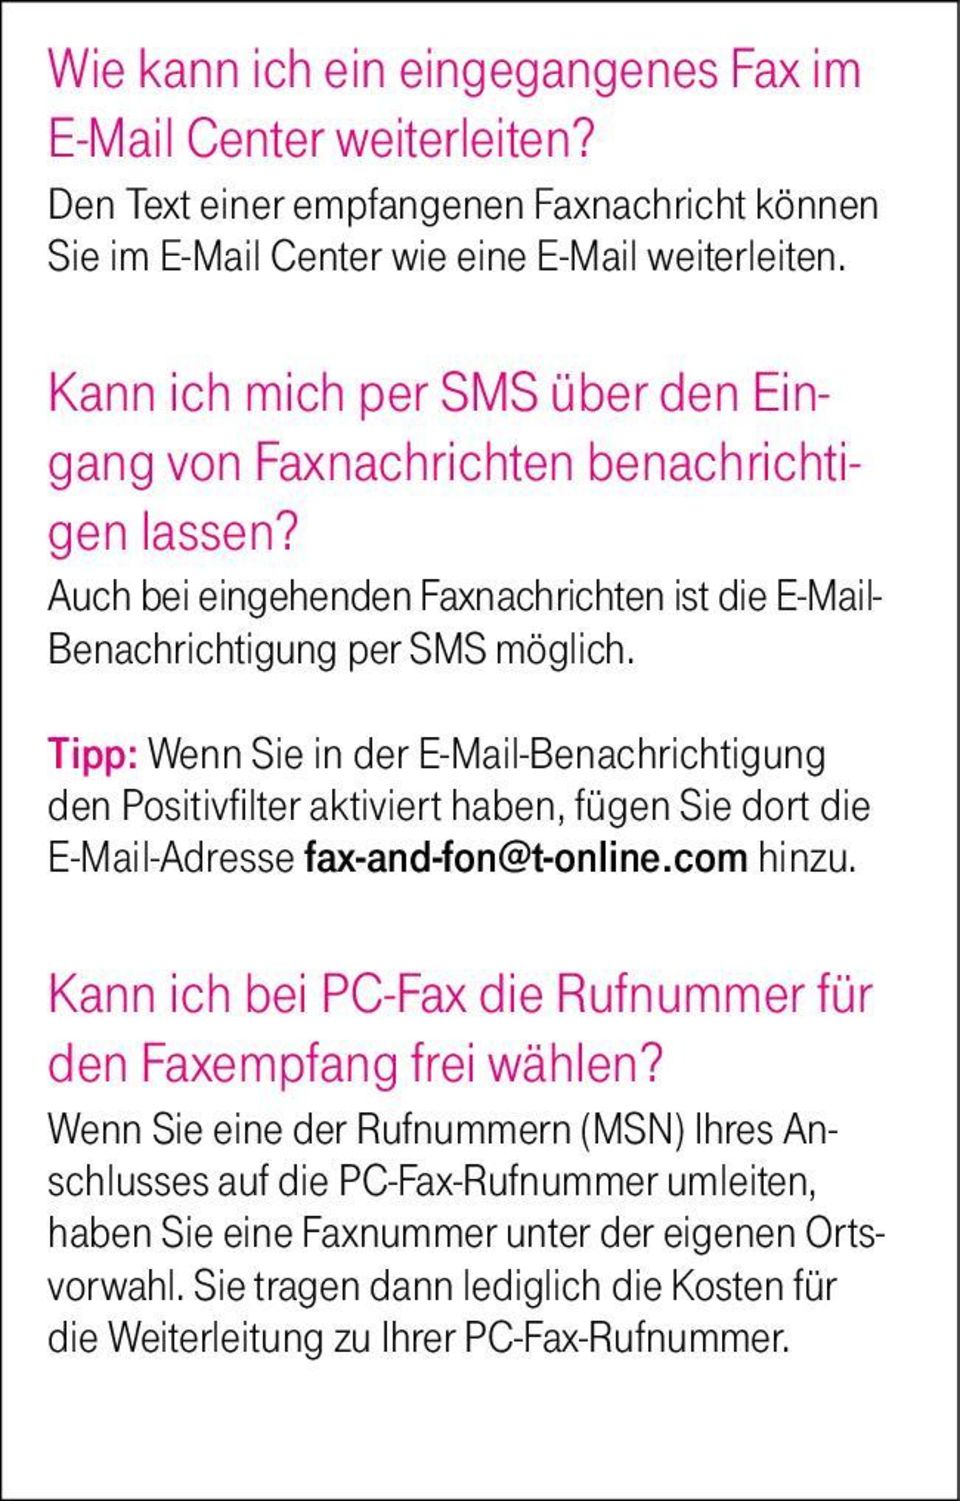 Tipp: Wenn Sie in der E-Mail-Benachrichtigung den Positivfilter aktiviert haben, fügen Sie dort die E-Mail-Adresse fax-and-fon@t-online.com hinzu.